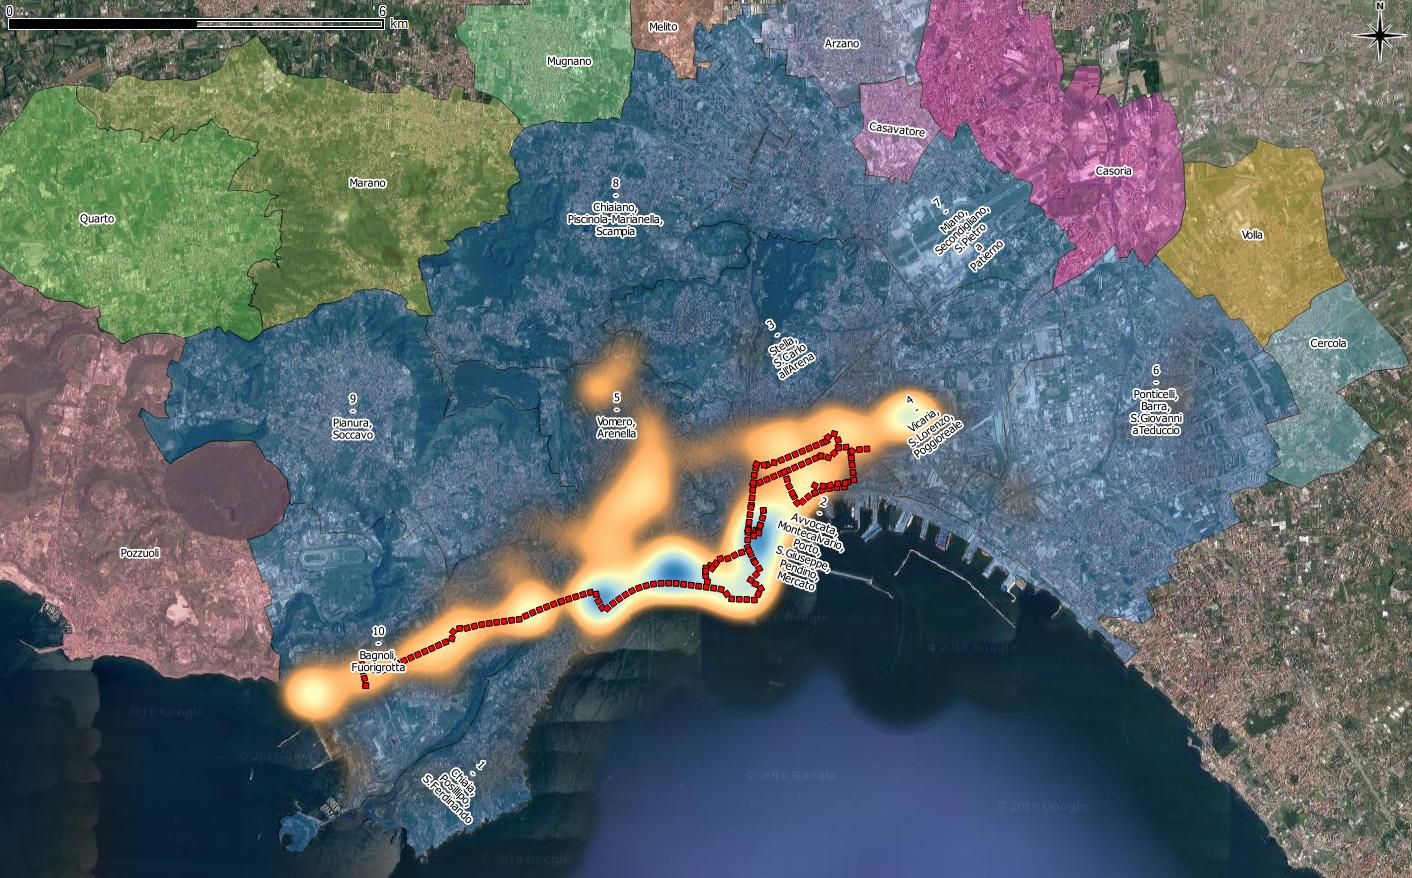 Heatmap - Flussi ciclistici durante l'ECC2015. Il tratteggio in rosso rappresenta il percorso ciclabile